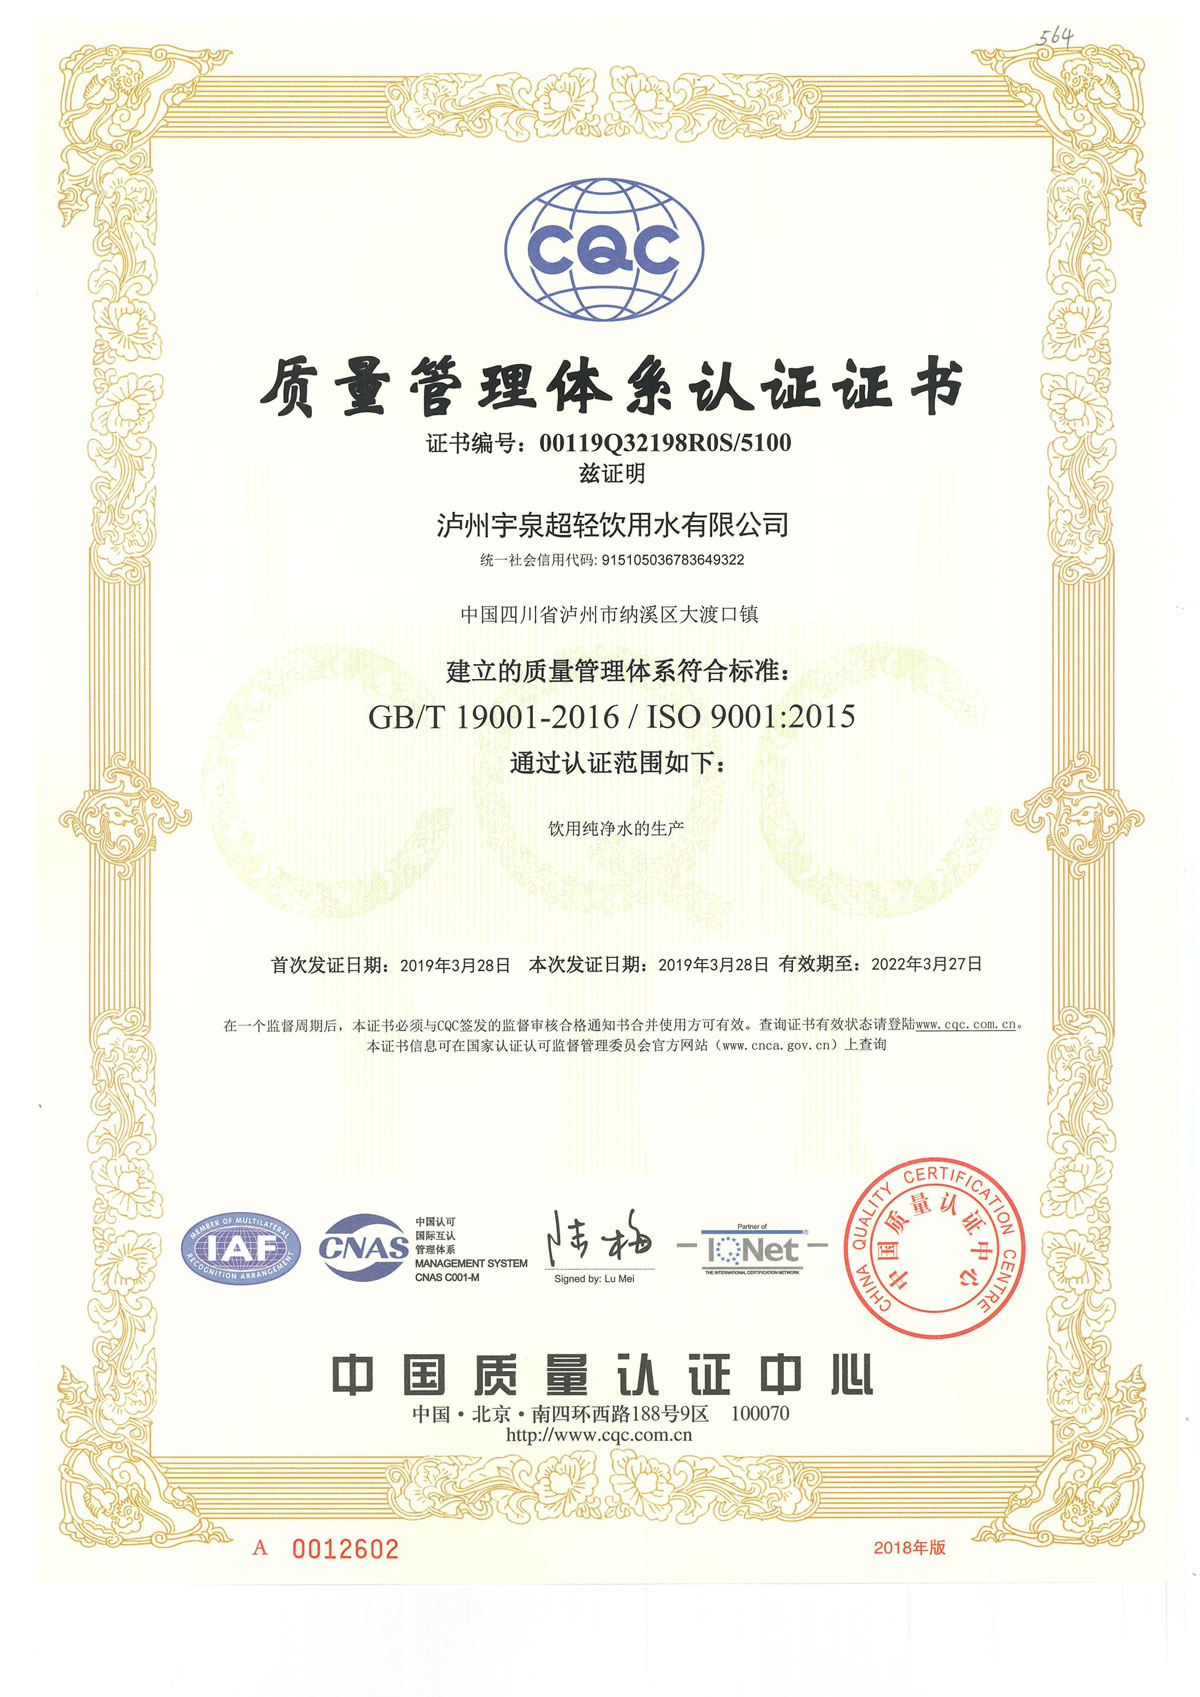 HACCP&ISO9001&ISO14001認證證書